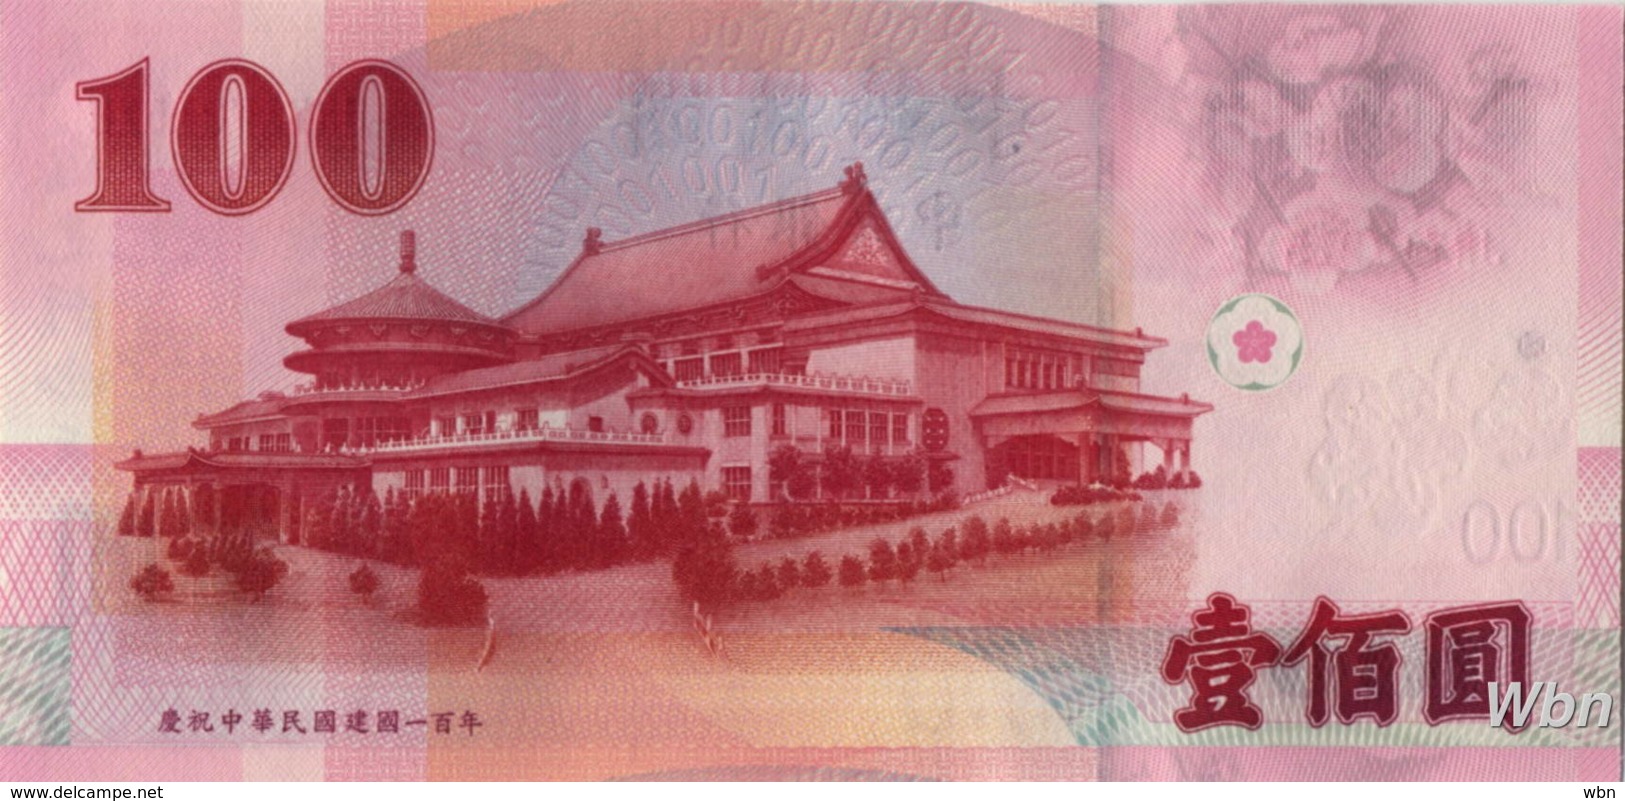 Taiwan 100 NT$ (P1998) (Pref: JR) -UNC- - Taiwan